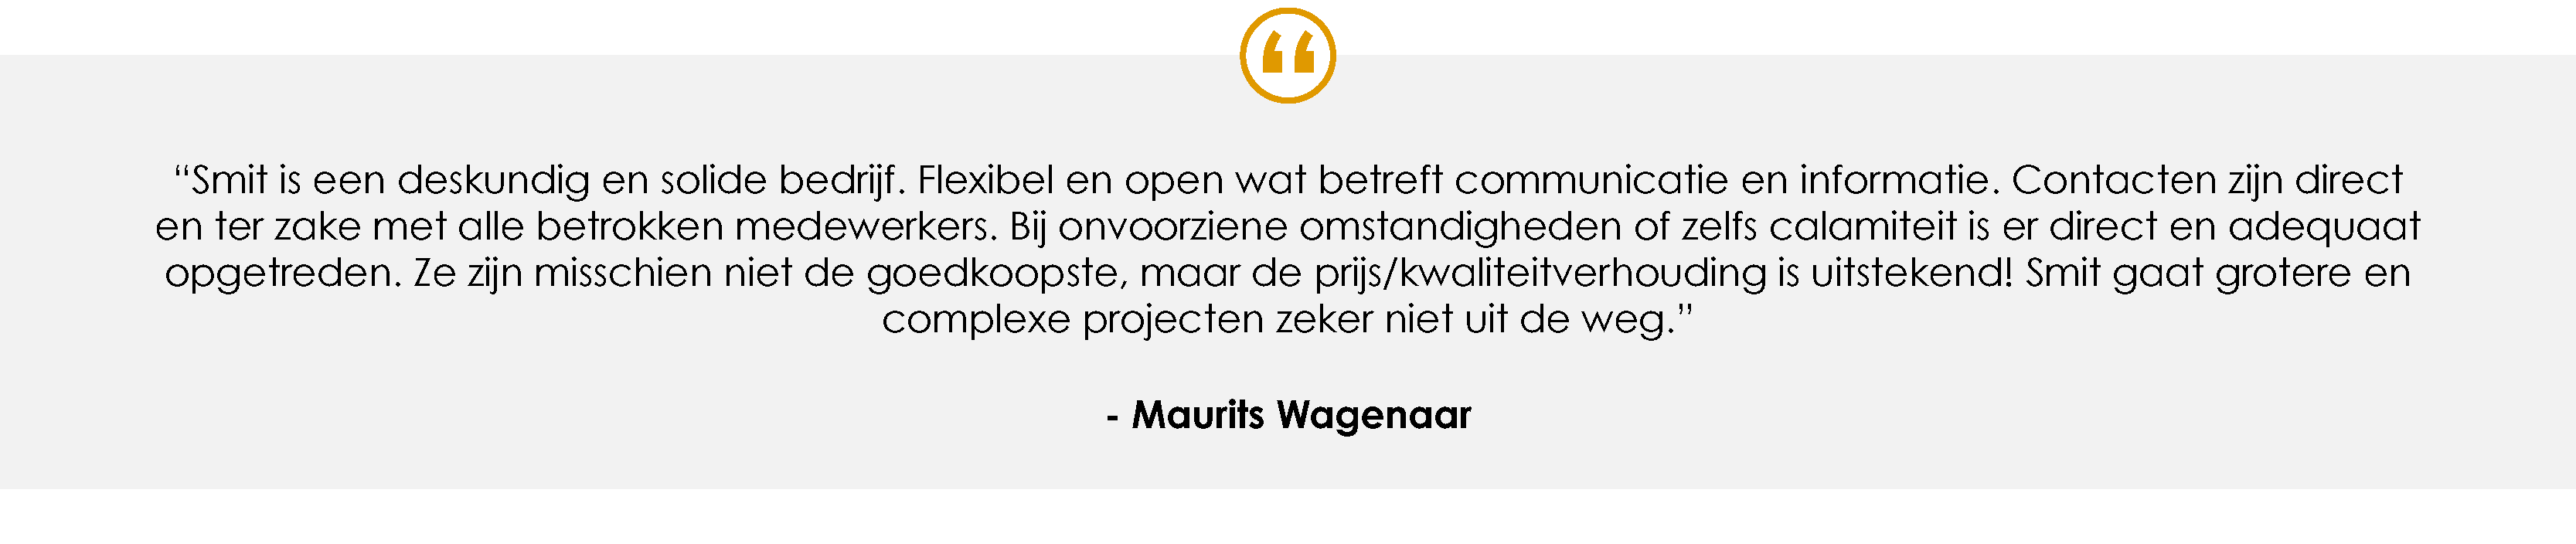 Testimonial - Maurits Wagenaar